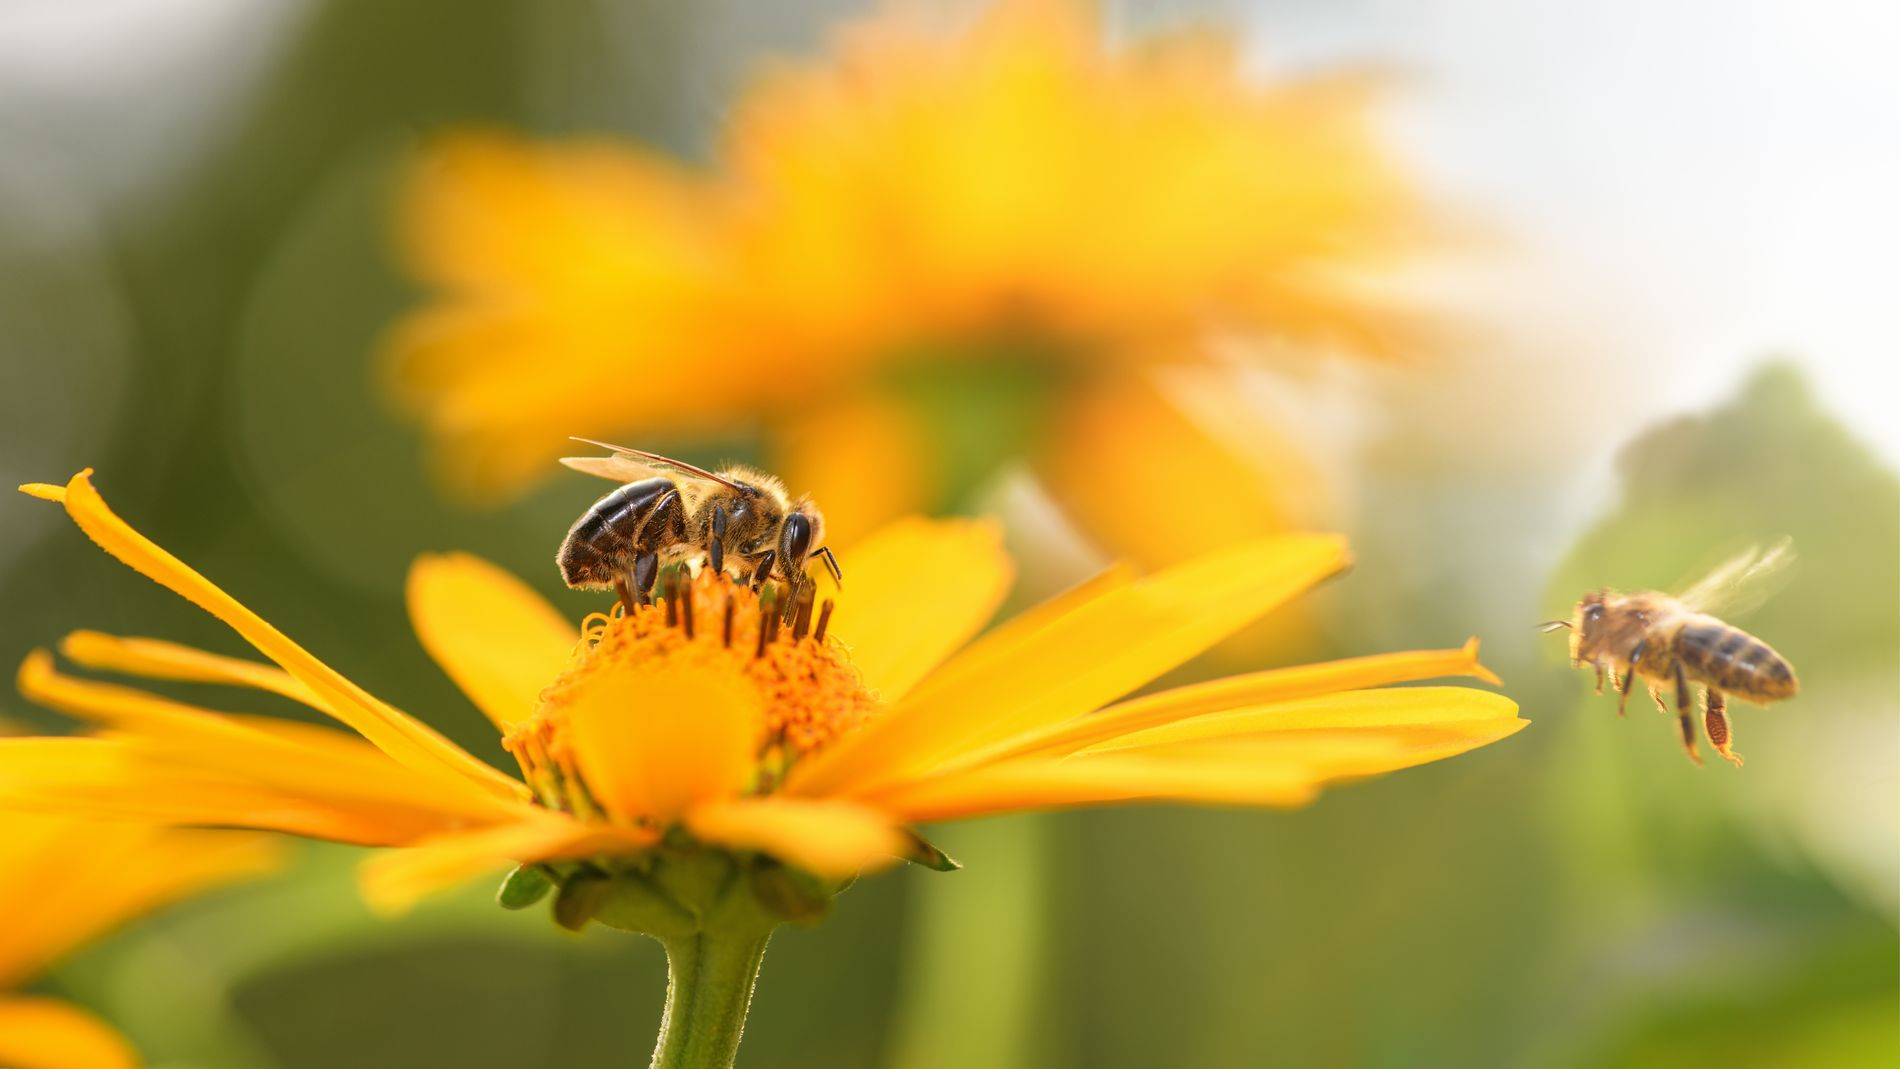 Comment aider les abeilles? En adaptant votre jardin! 